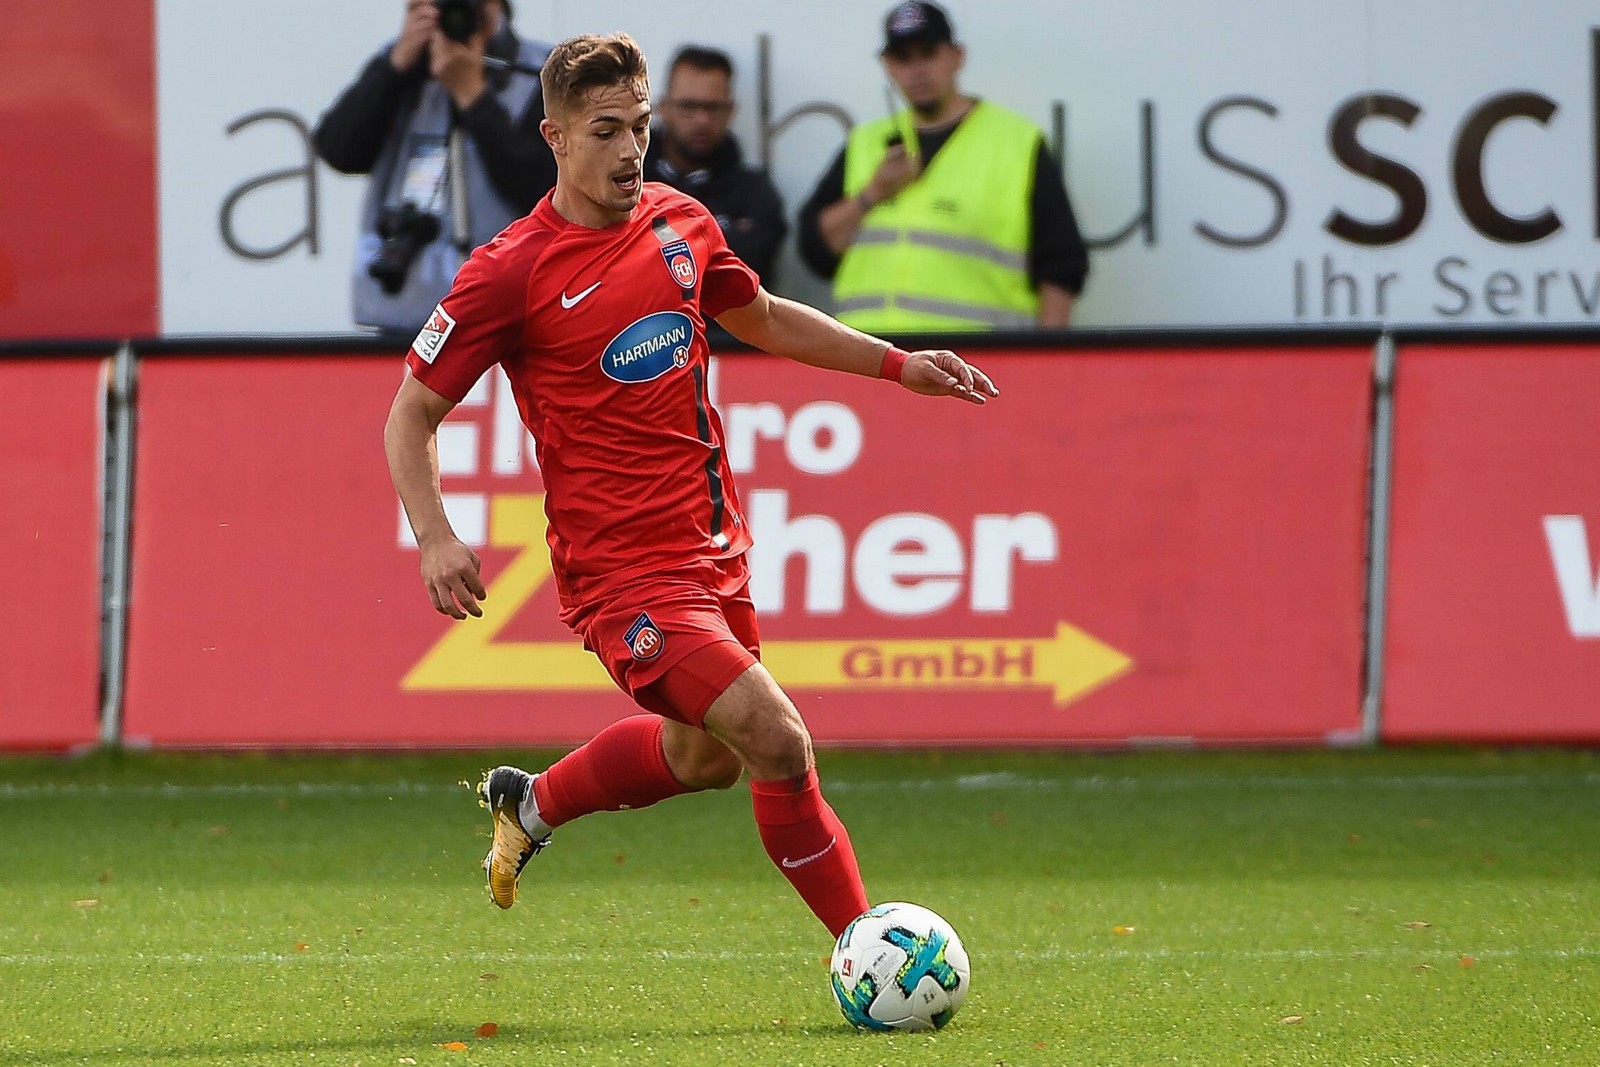 Feiert Nikola Dovedan mit dem FCH den ersehnten ersten Heimdreier? Jetzt auf Heidenheim gegen Greuther Fürth wetten.